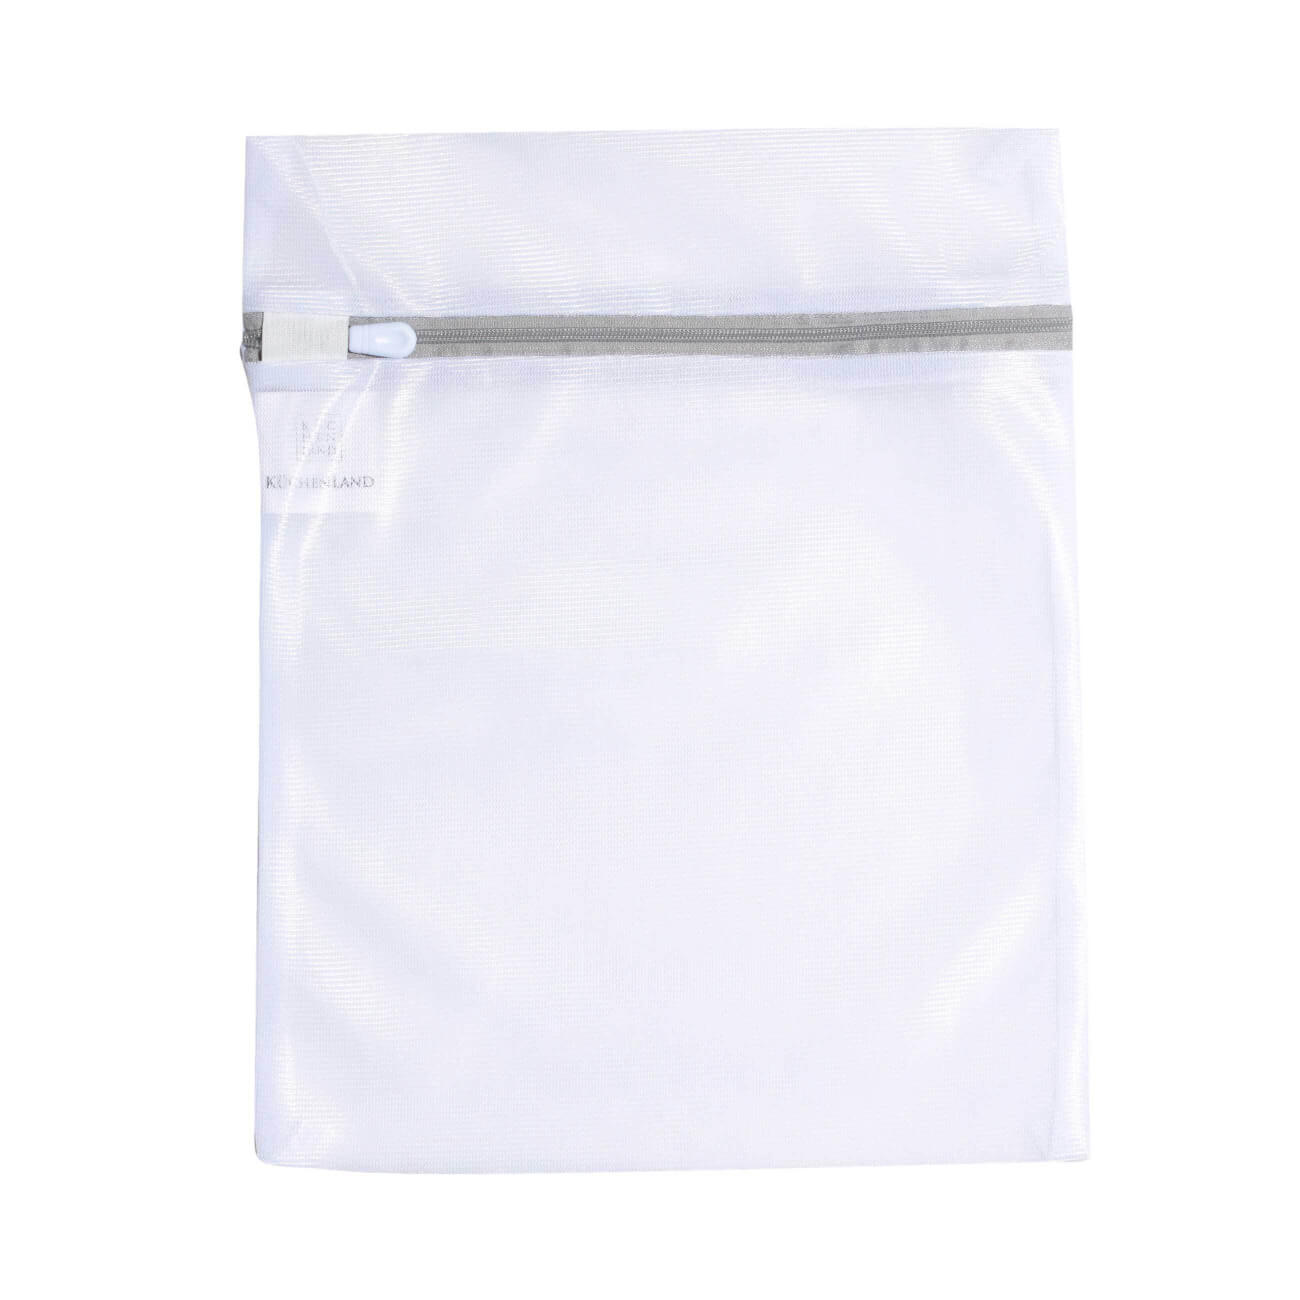 Мешок для стирки нижнего белья, 25х30 см, полиэстер, бело-серый, Safety plus мешок для стирки носков и колготок 22х33 см полиэстер бело серый safety